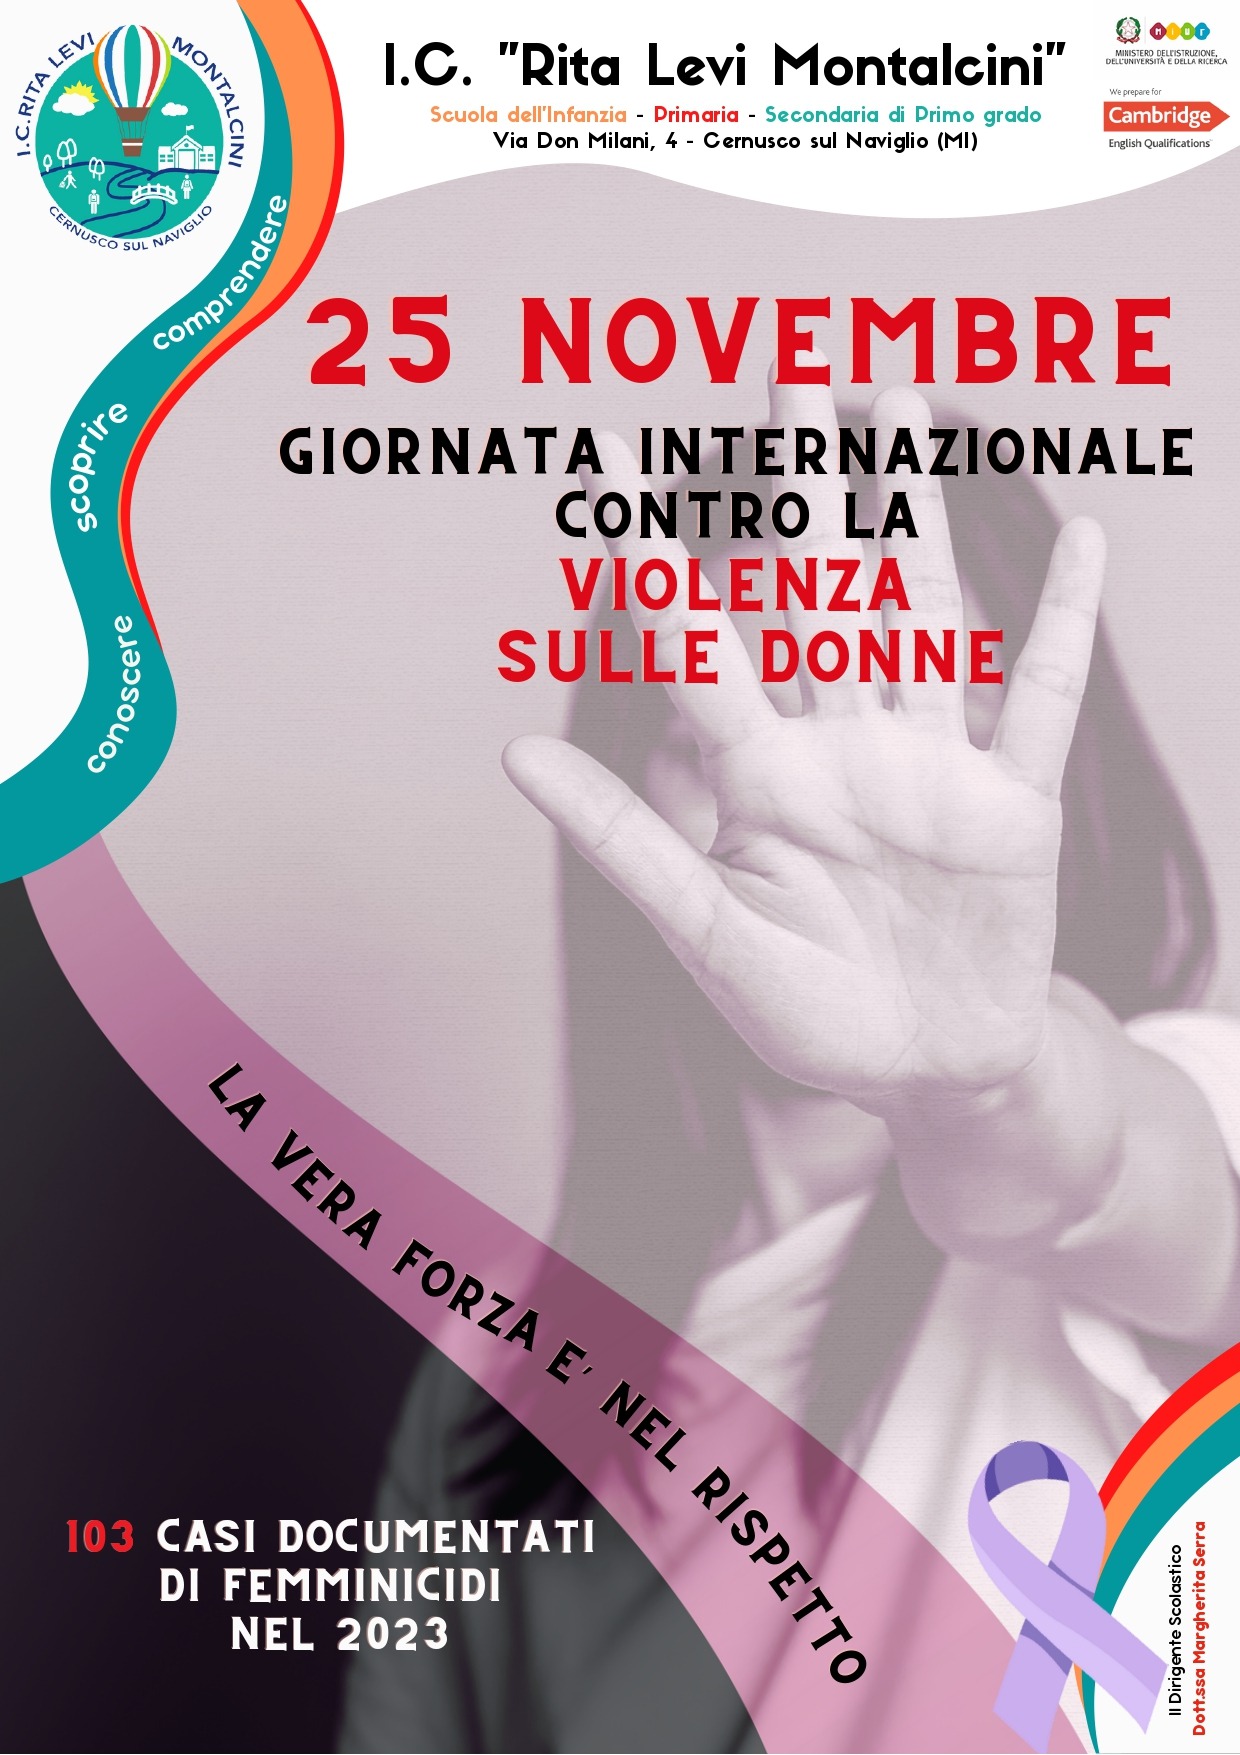 25 novembre Giornata internazionale contro la violenza sulle donne